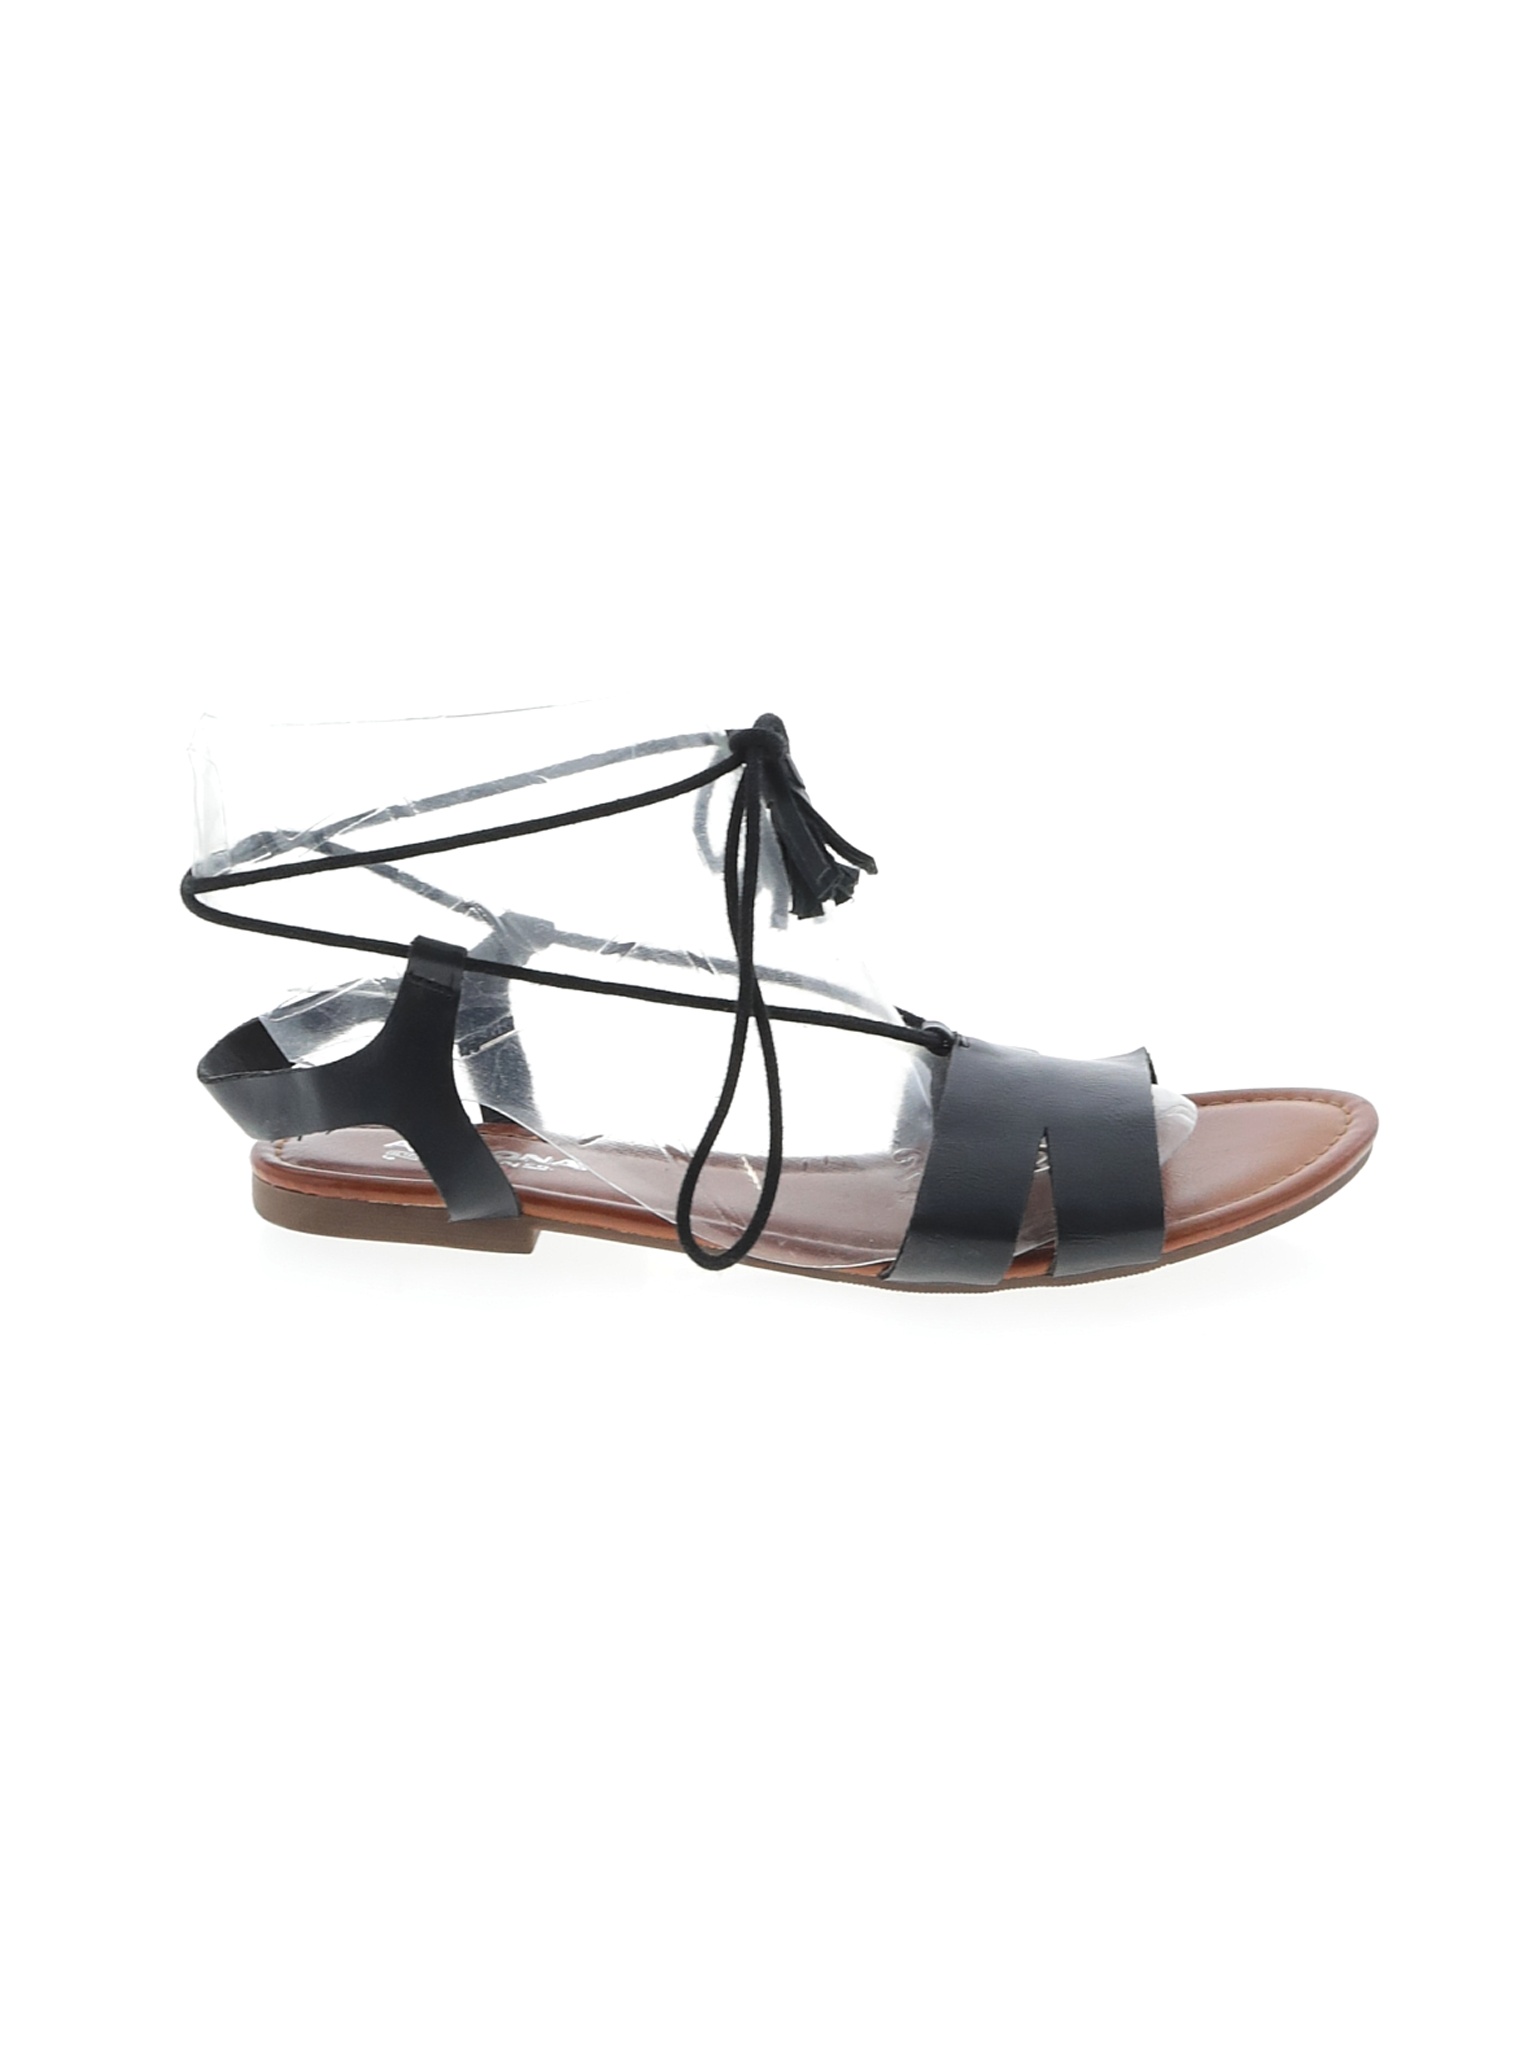 arizona jean company sandals